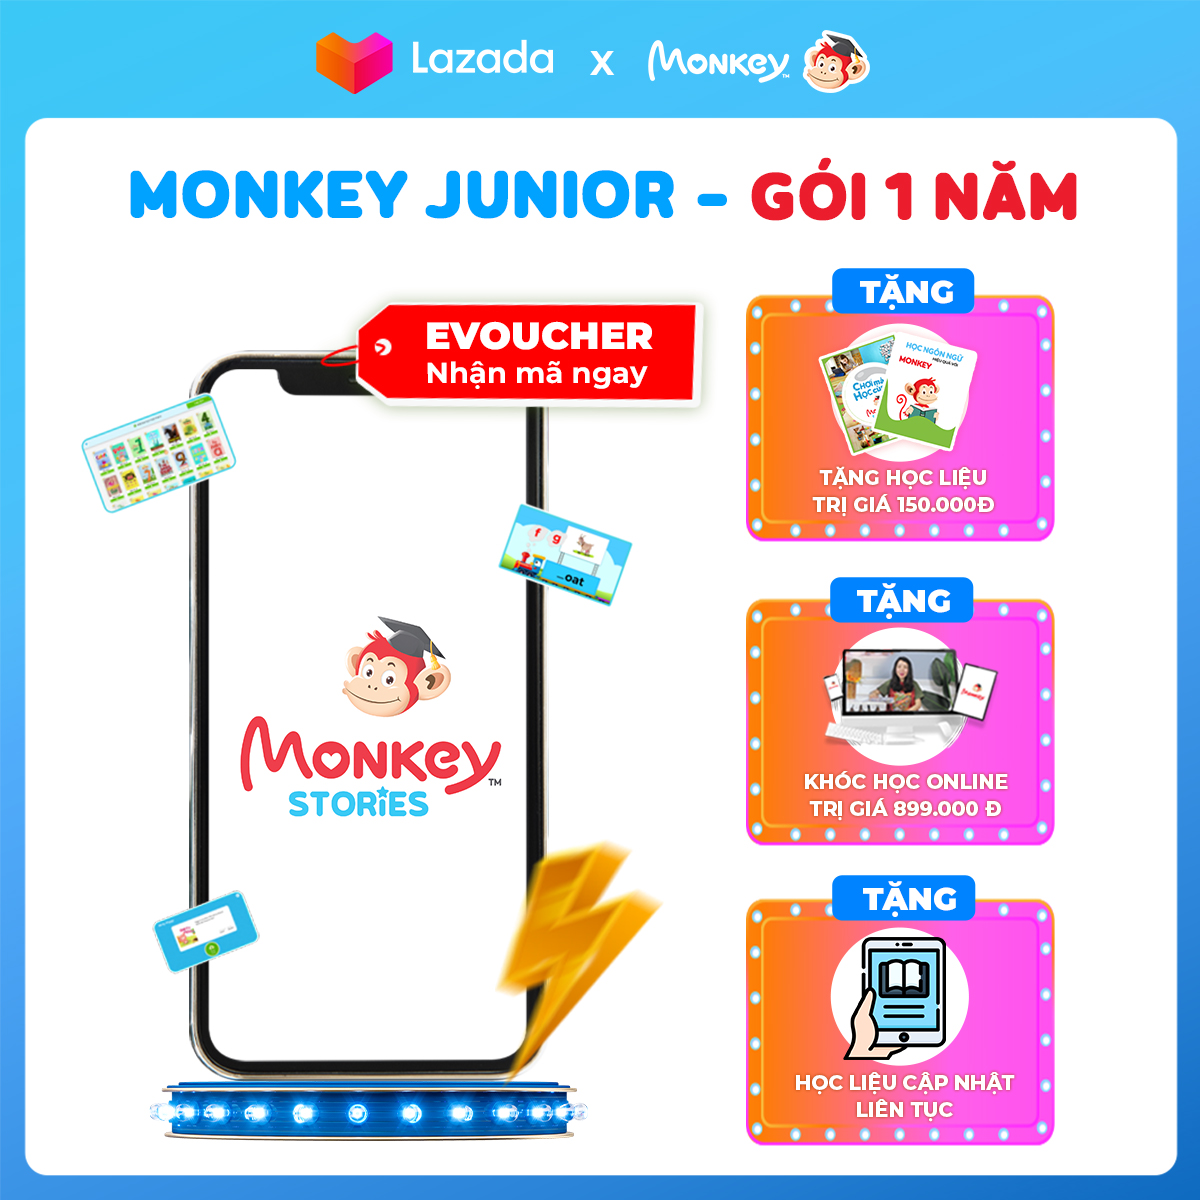 Phần mềm học Tiếng Anh Monkey Stories - Ứng dụng phát triển toàn diện 4 kỹ năng cho trẻ 2-10 tuổi - Gói 1 năm